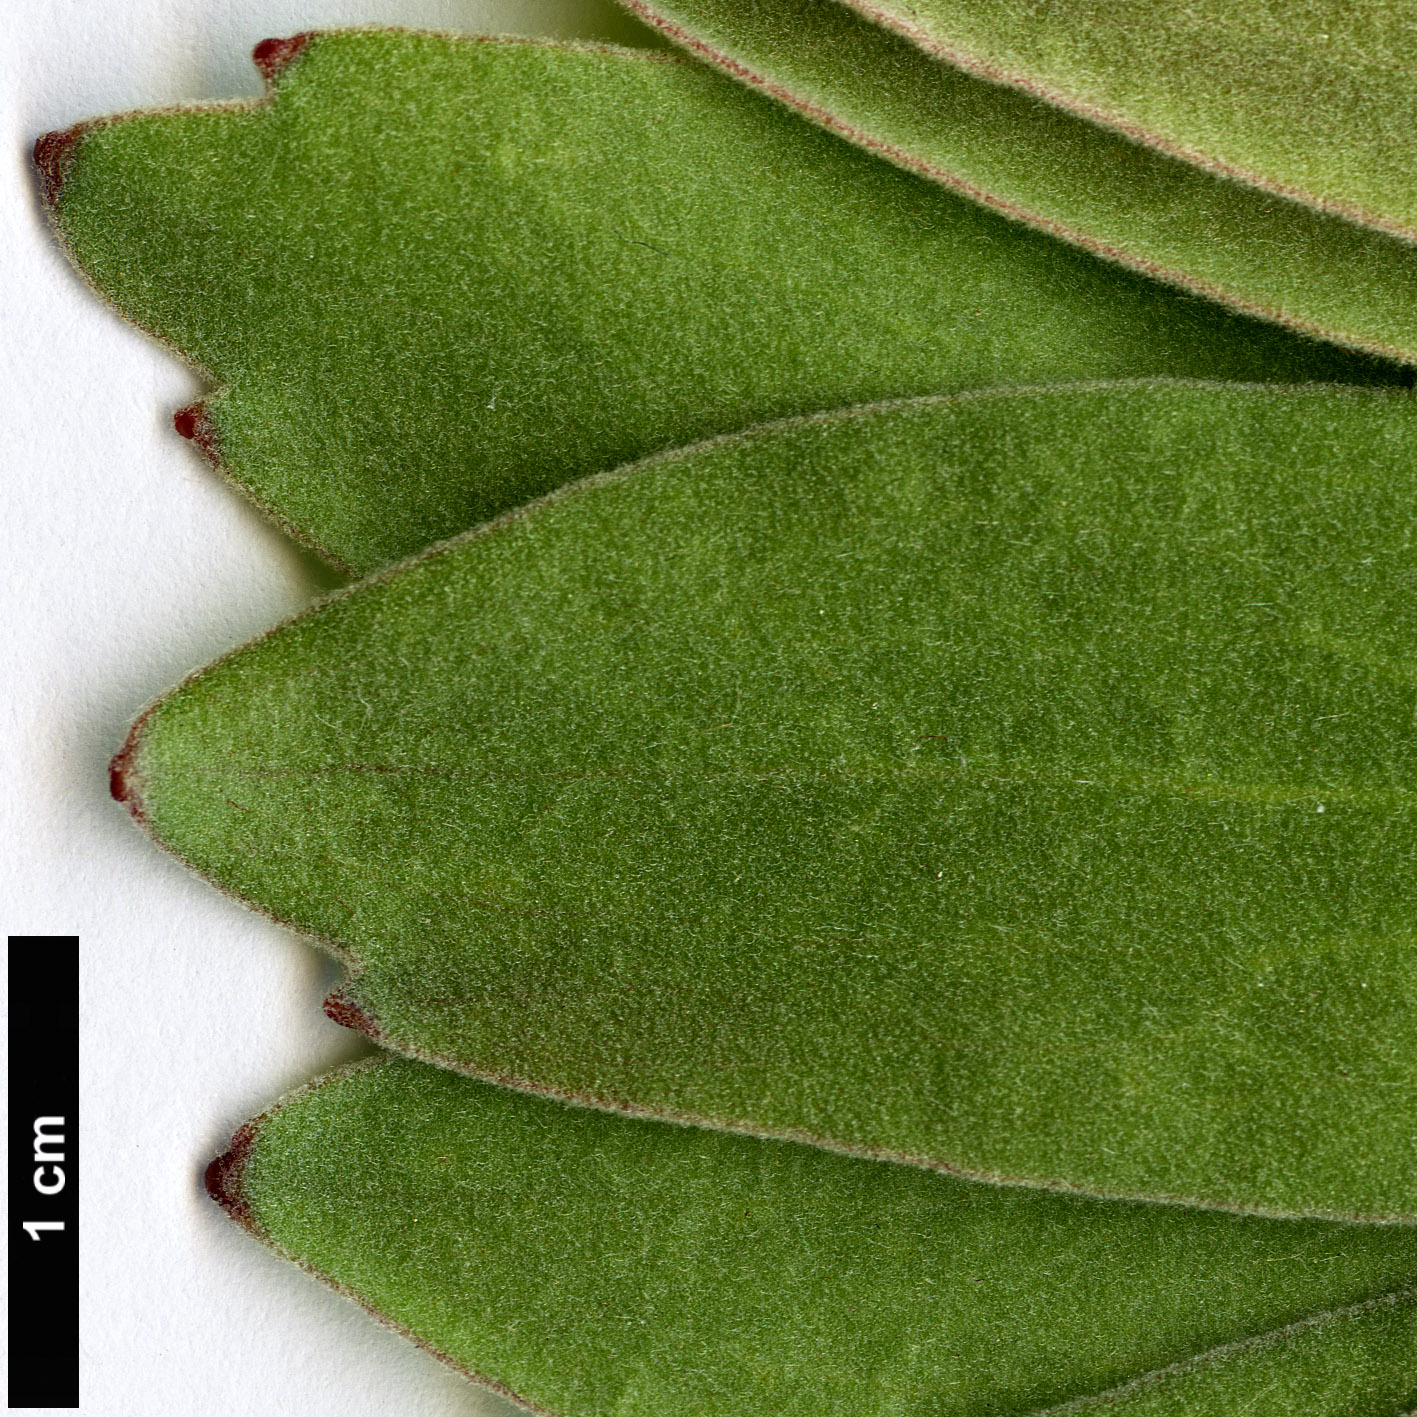 High resolution image: Family: Proteaceae - Genus: Leucospermum - Taxon: grandiflorum